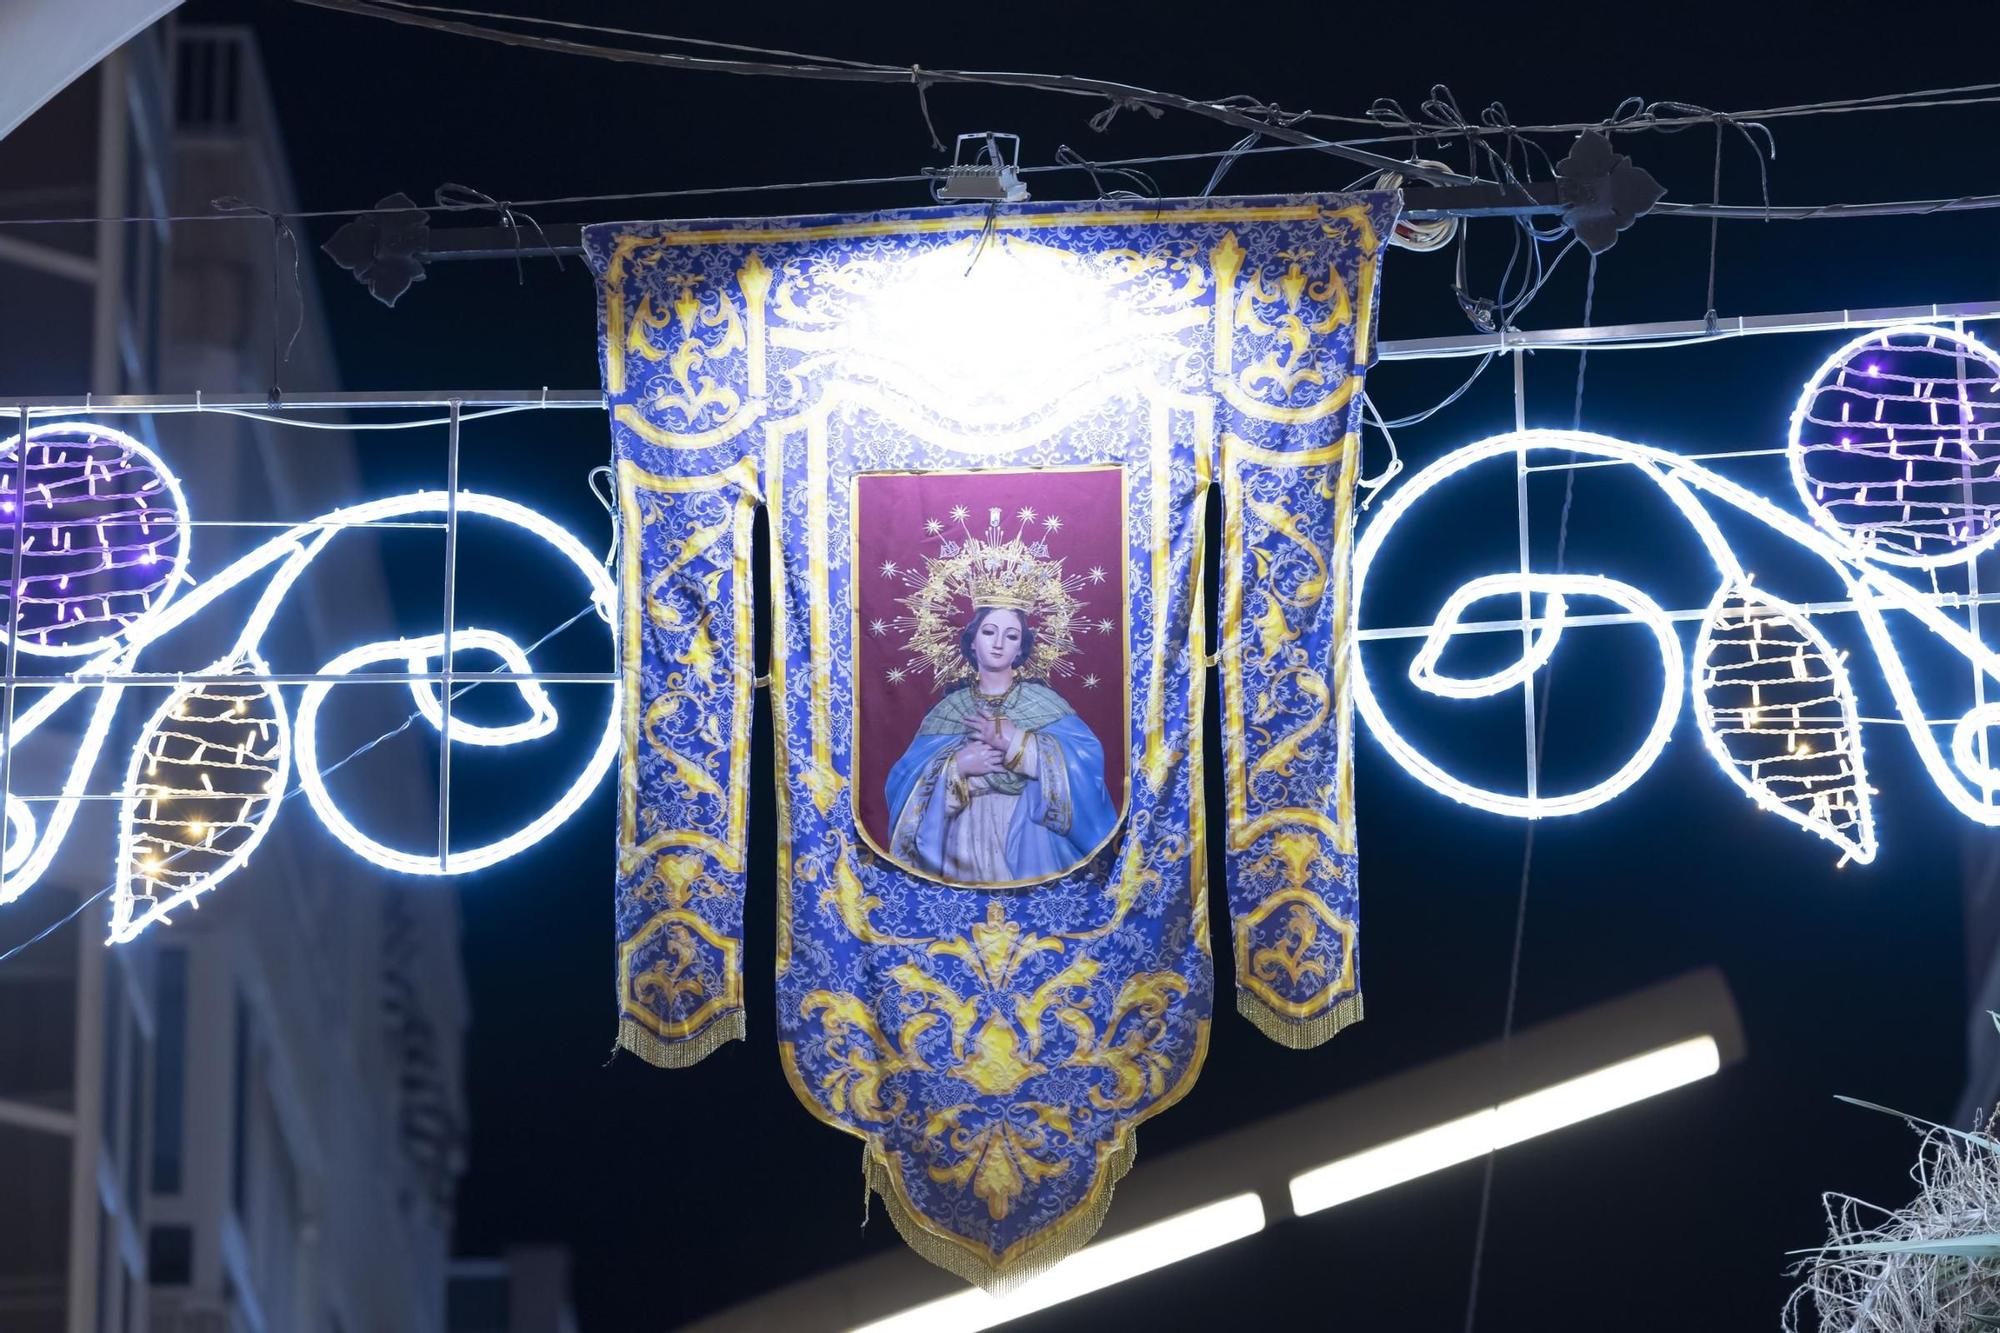 Fiesta multitudinaria de encendido de la iluminación de fiestas patronales y Navidad en Torrevieja